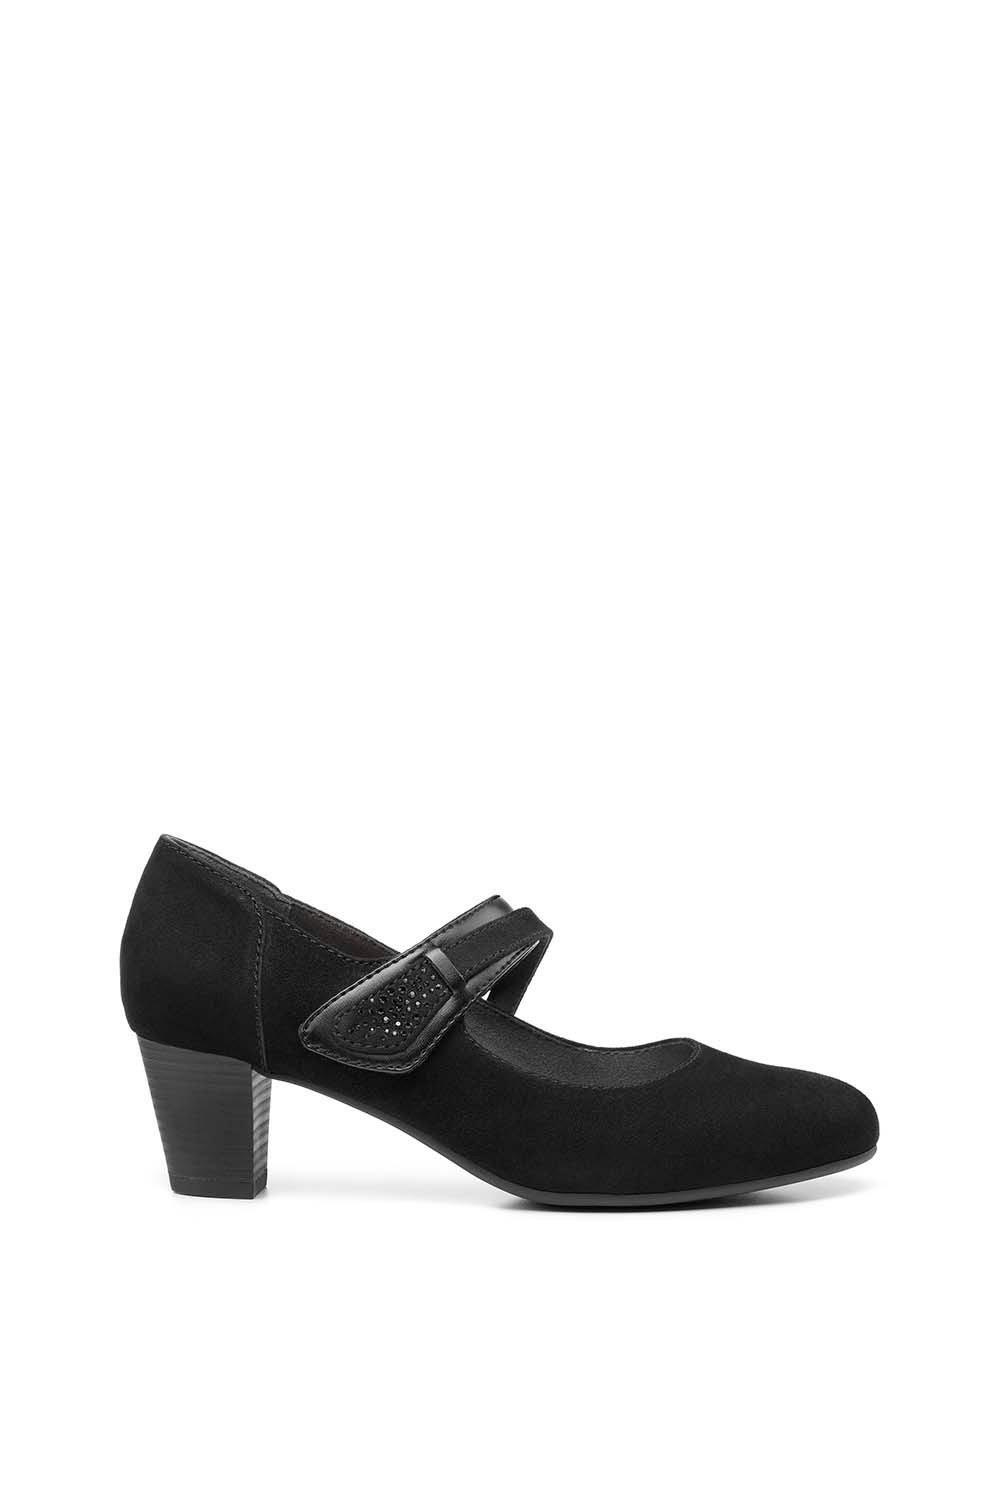 Формальная обувь «Самба» Hotter, черный